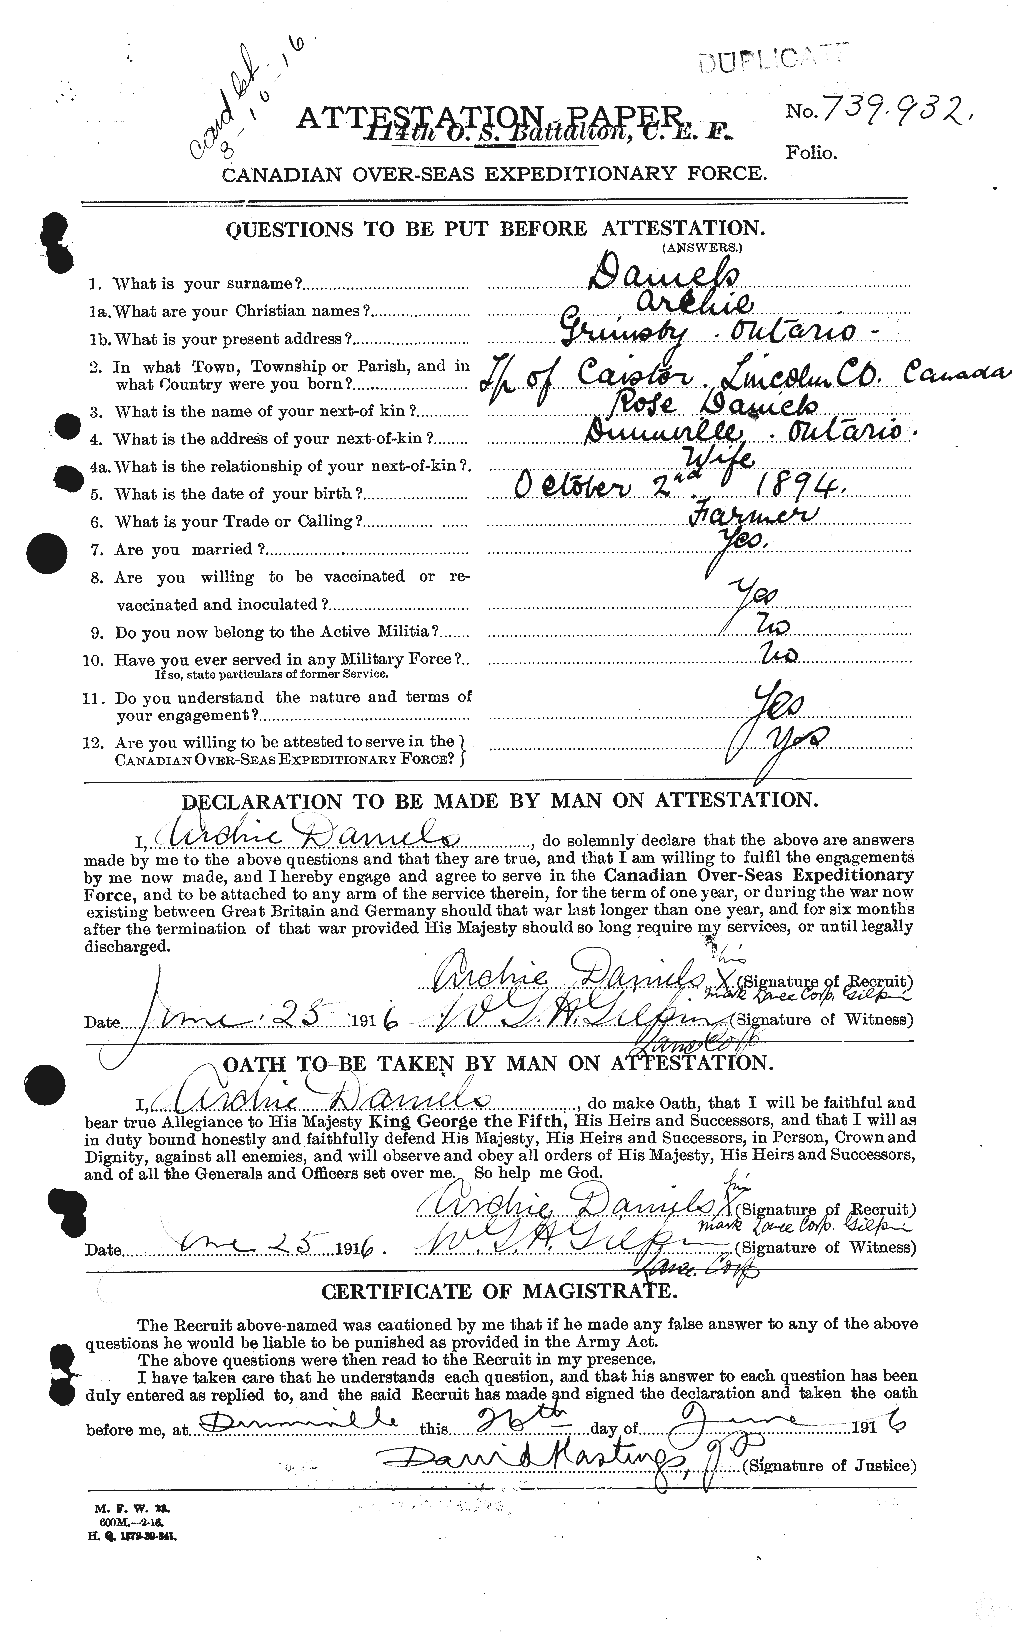 Dossiers du Personnel de la Première Guerre mondiale - CEC 279568a